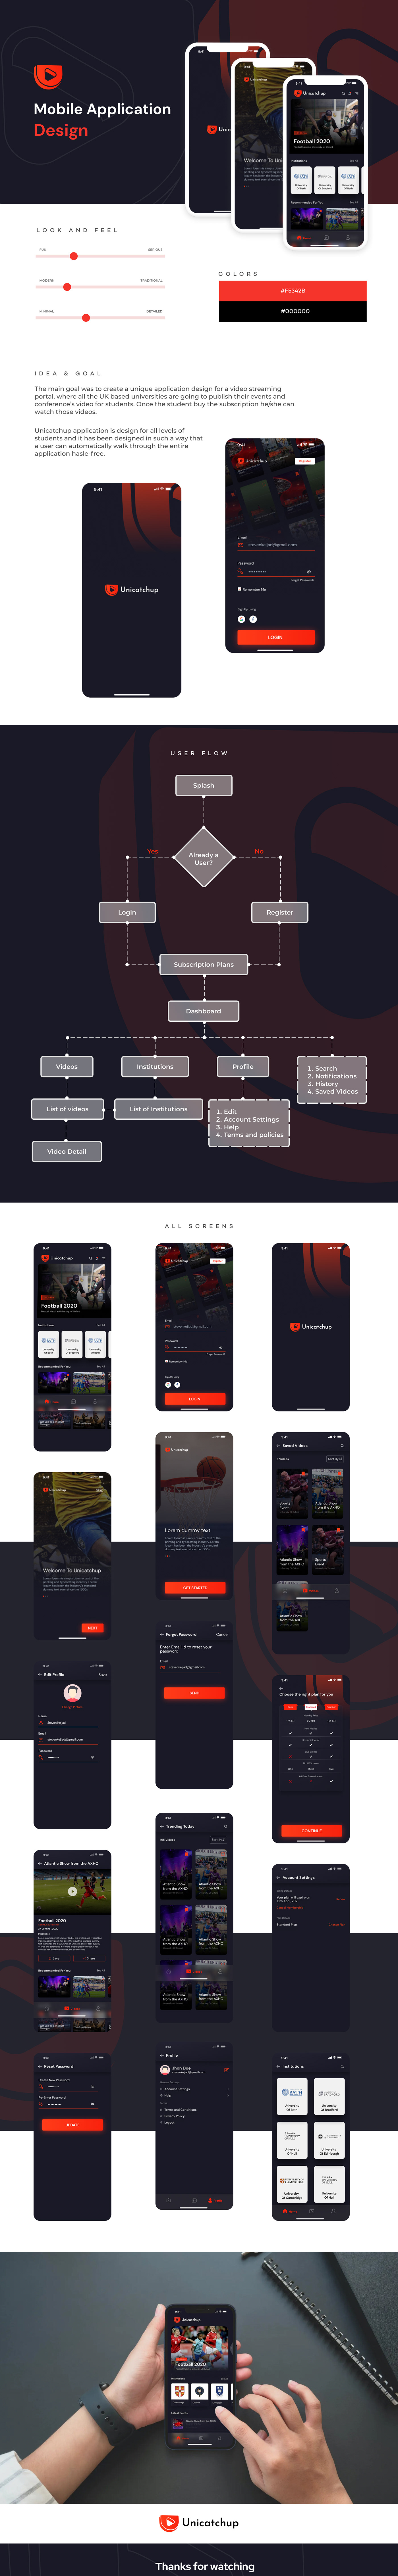 Appdesign mobileapp UI ux